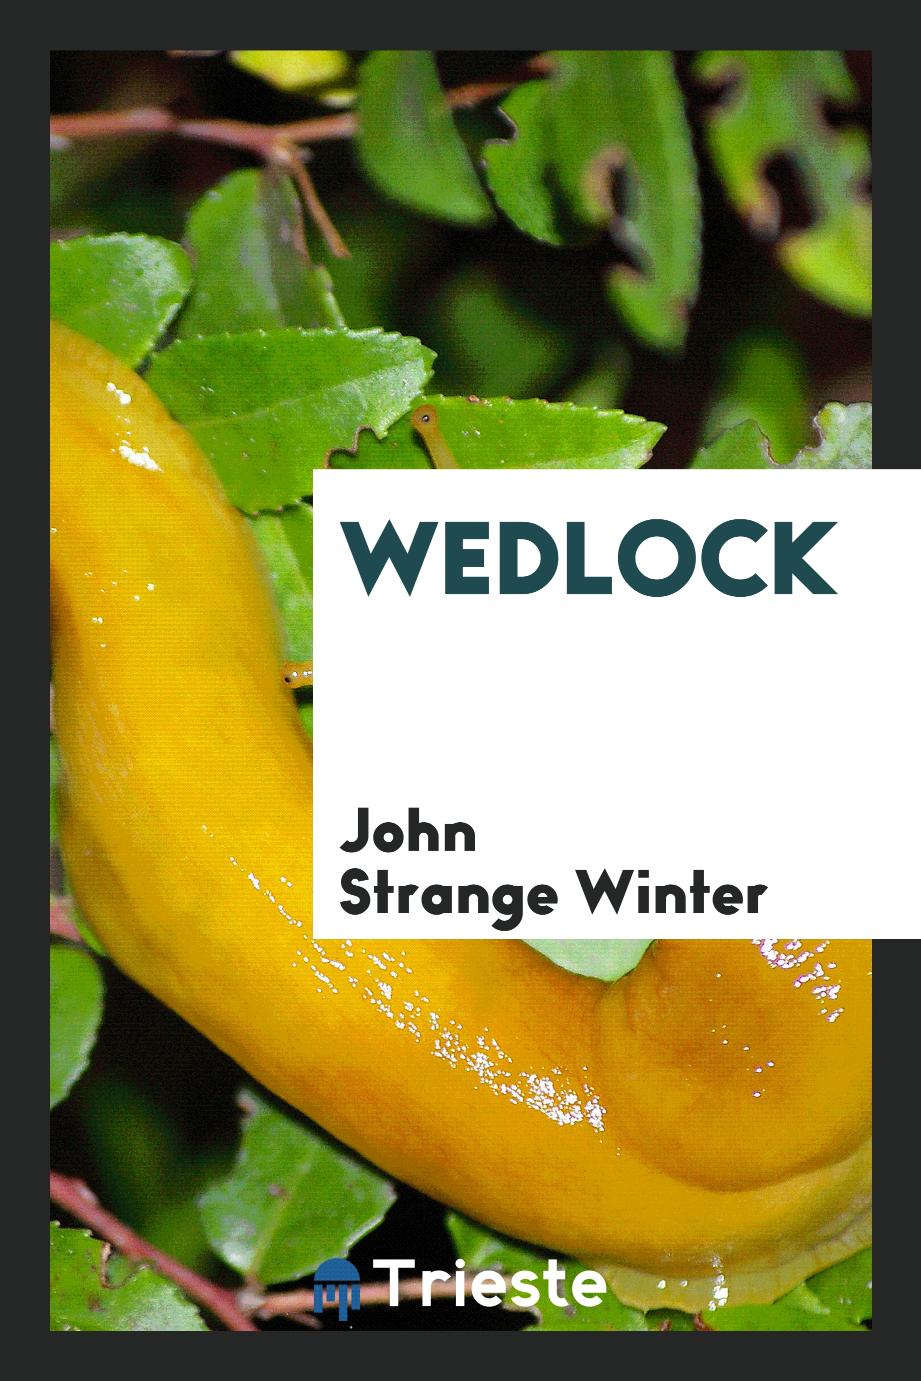 John Strange Winter - Wedlock